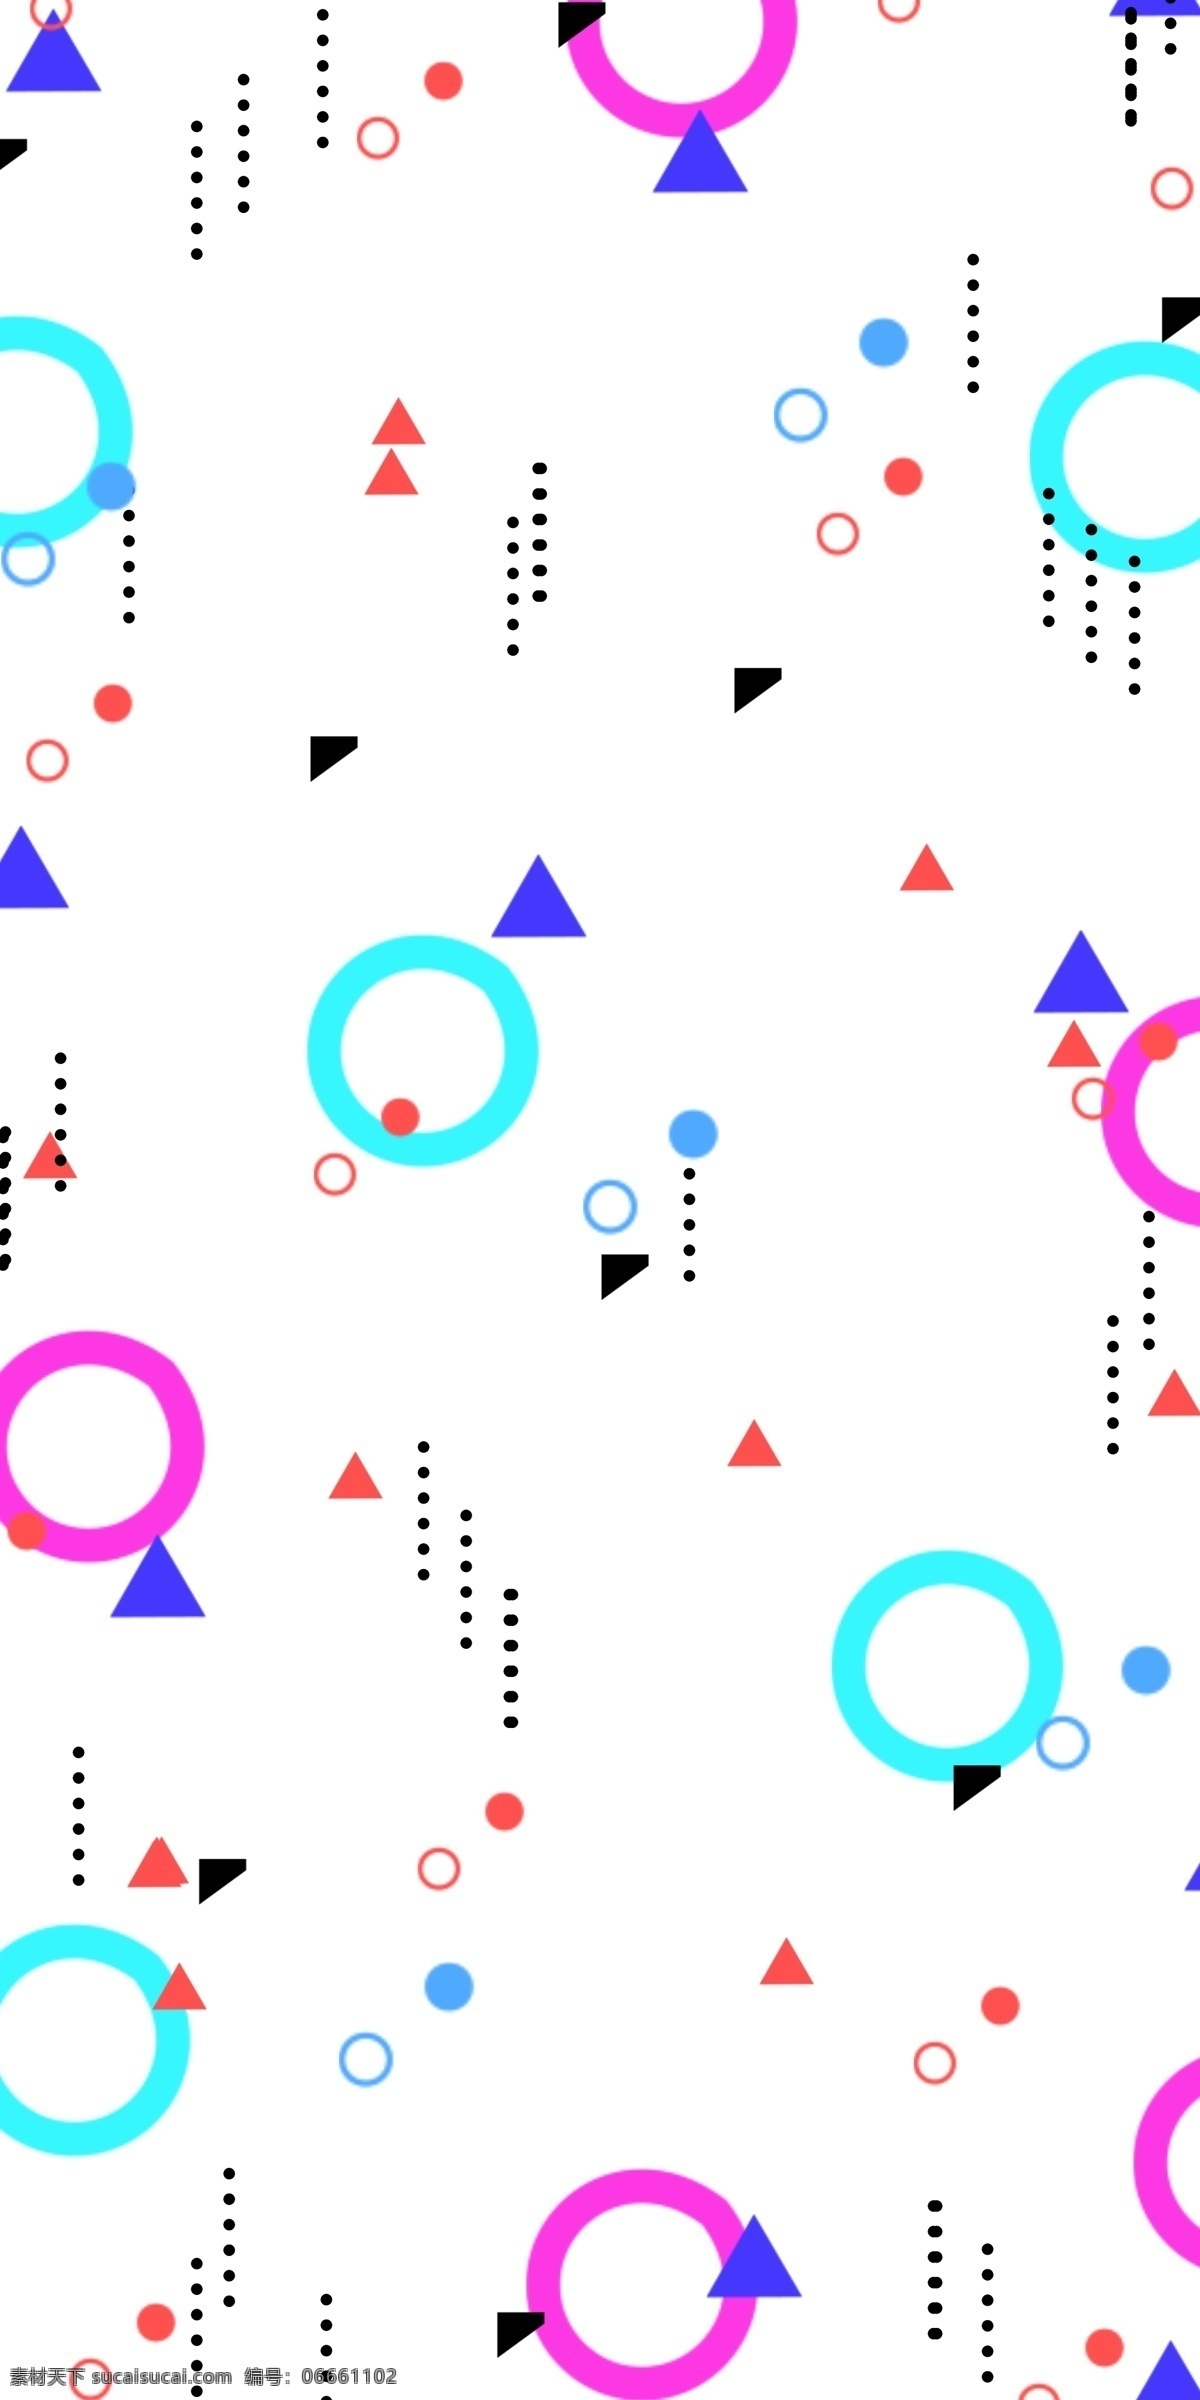 彩色 圆圈 孟菲斯 插画 圆圈插画 底纹插画 蓝色三角形 黑色圆点点 孟菲斯插画 彩色圆圈 红色三角形